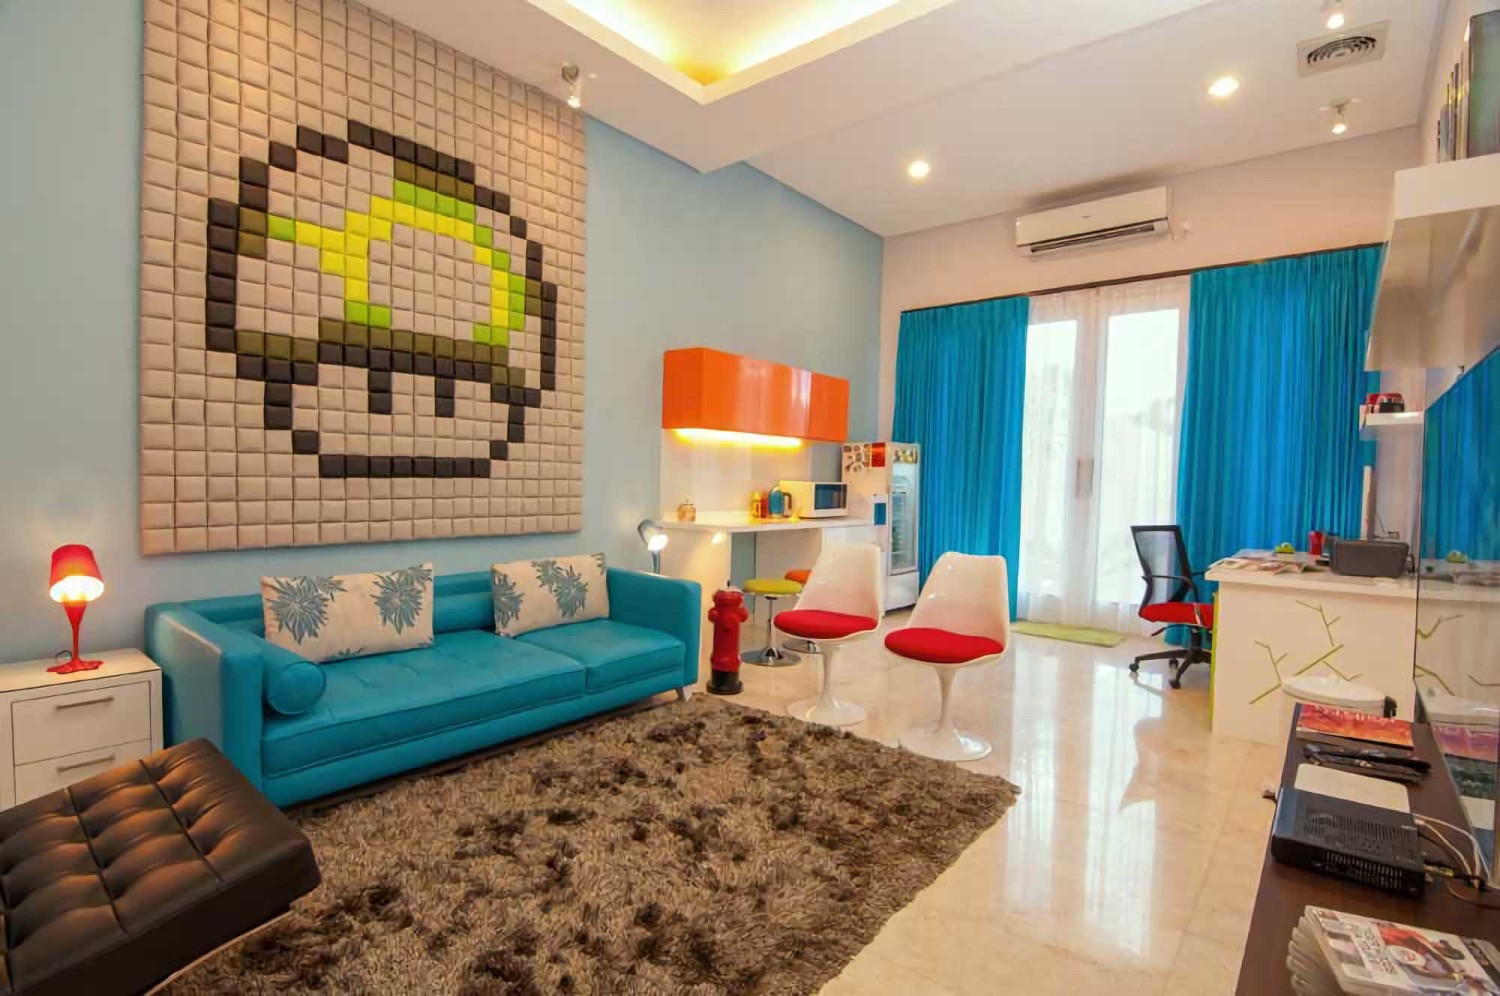 Sentuhan Warna Turquoise Untuk Tampilan Rumah Minimalis - Design - HD Wallpaper 